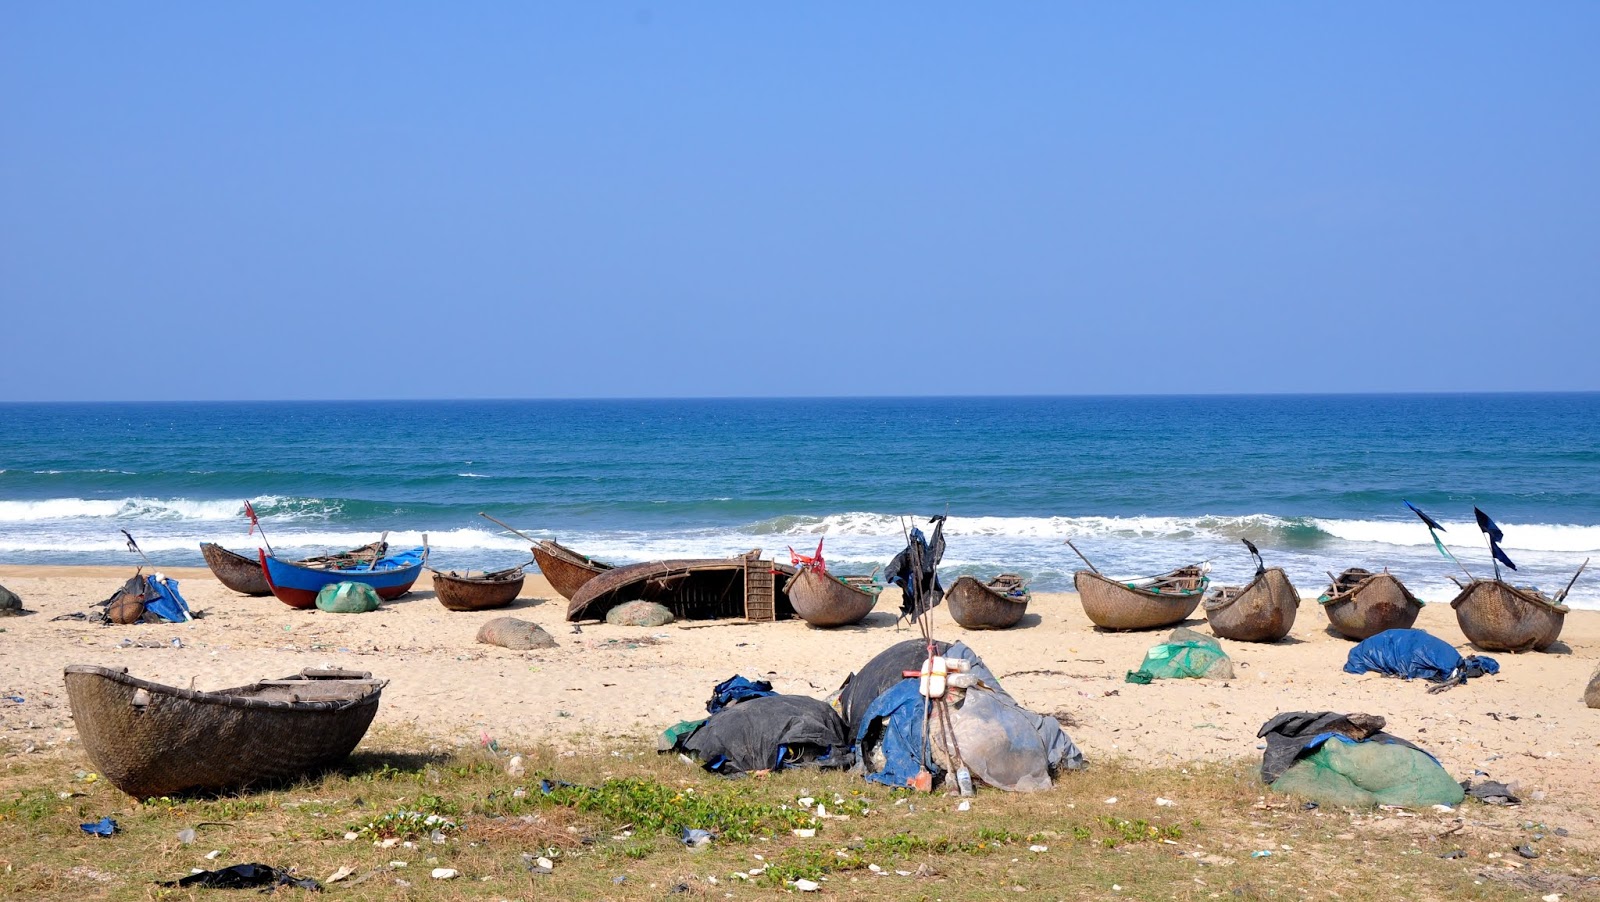 Zdjęcie Minh Tan Beach z poziomem czystości niski